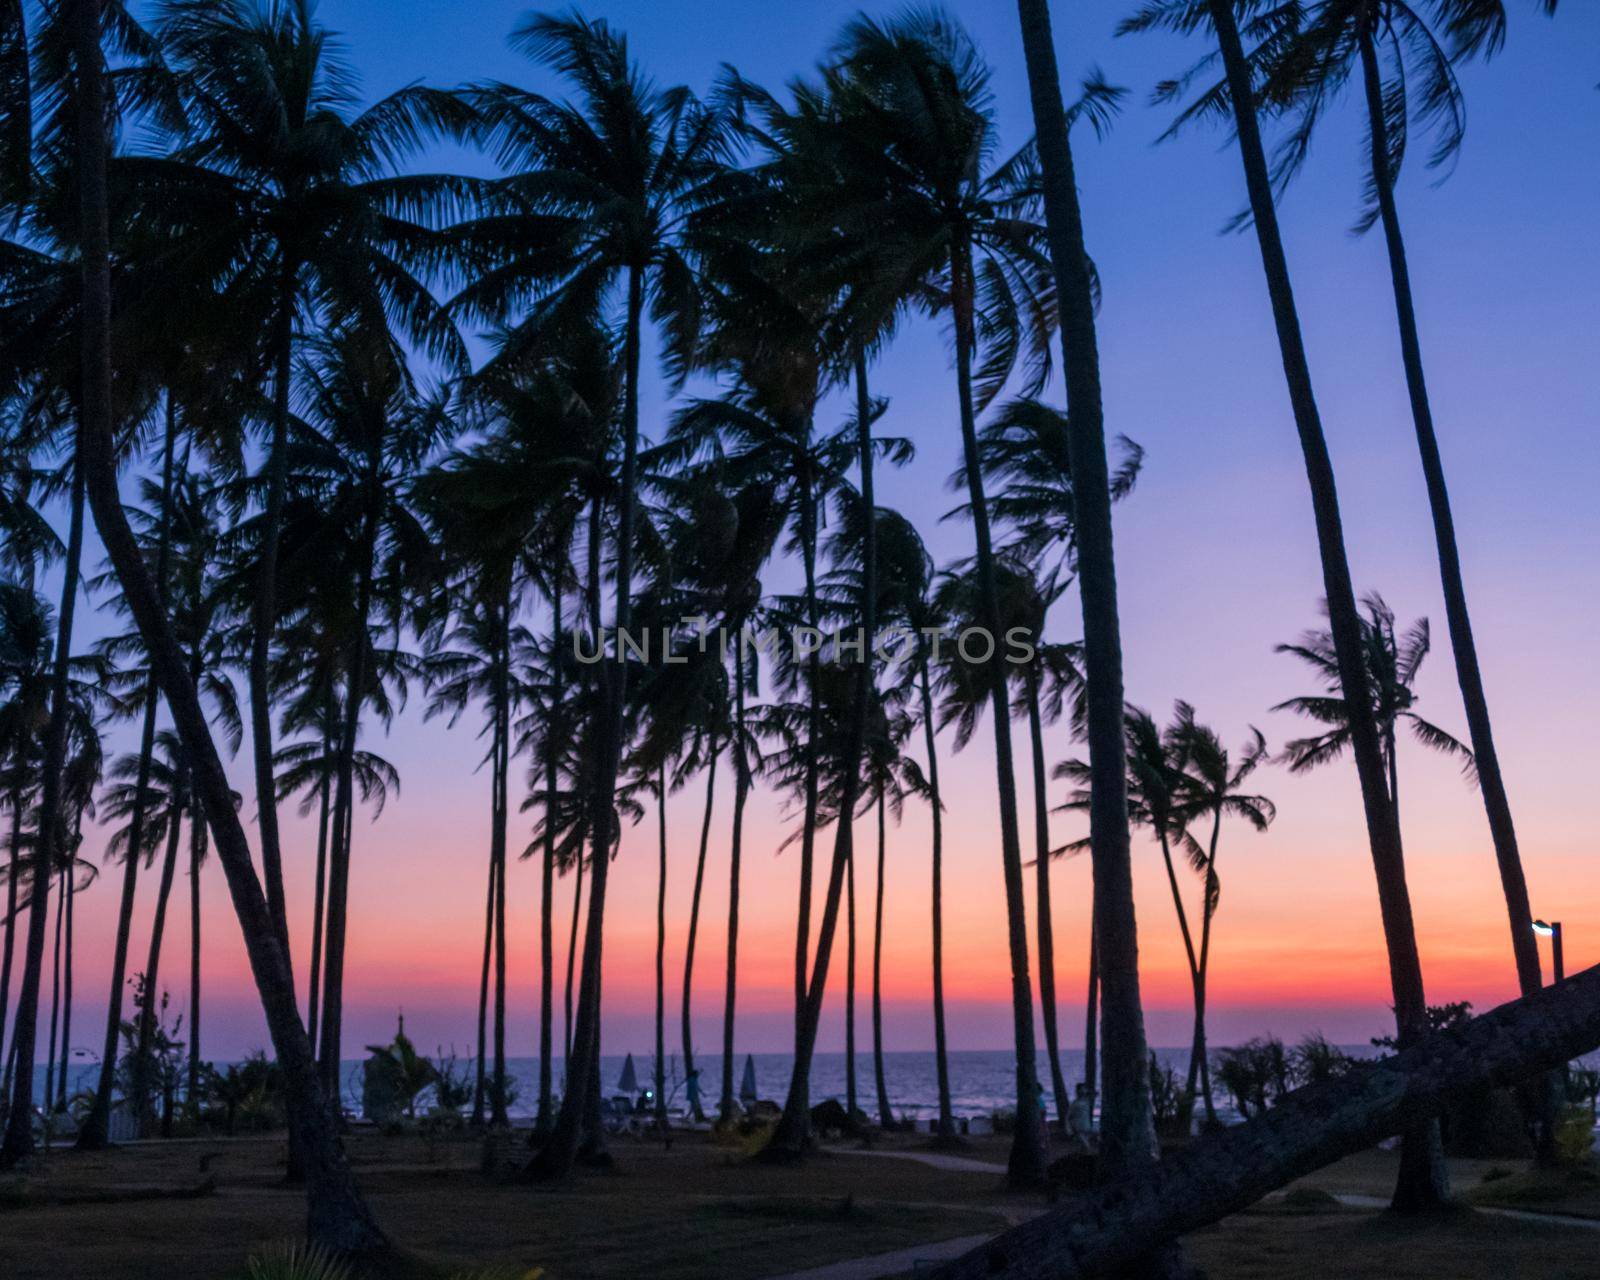 Palm trees at beach at dusk